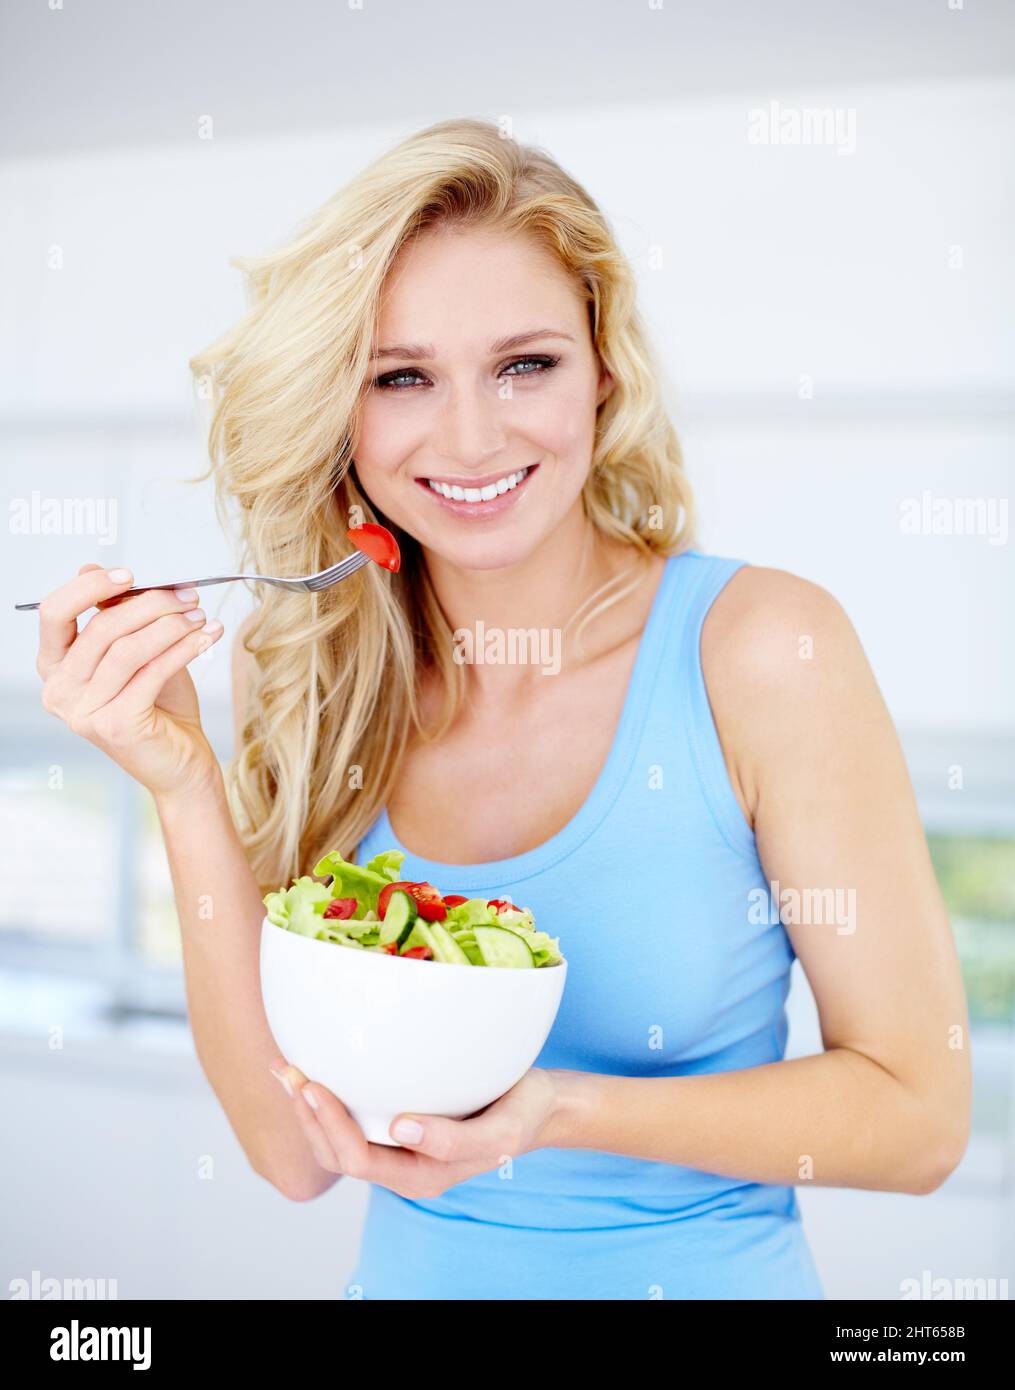 Il giusto tipo di dieta. Ritratto di una bellissima giovane donna che mangia un'insalata sana. Foto Stock